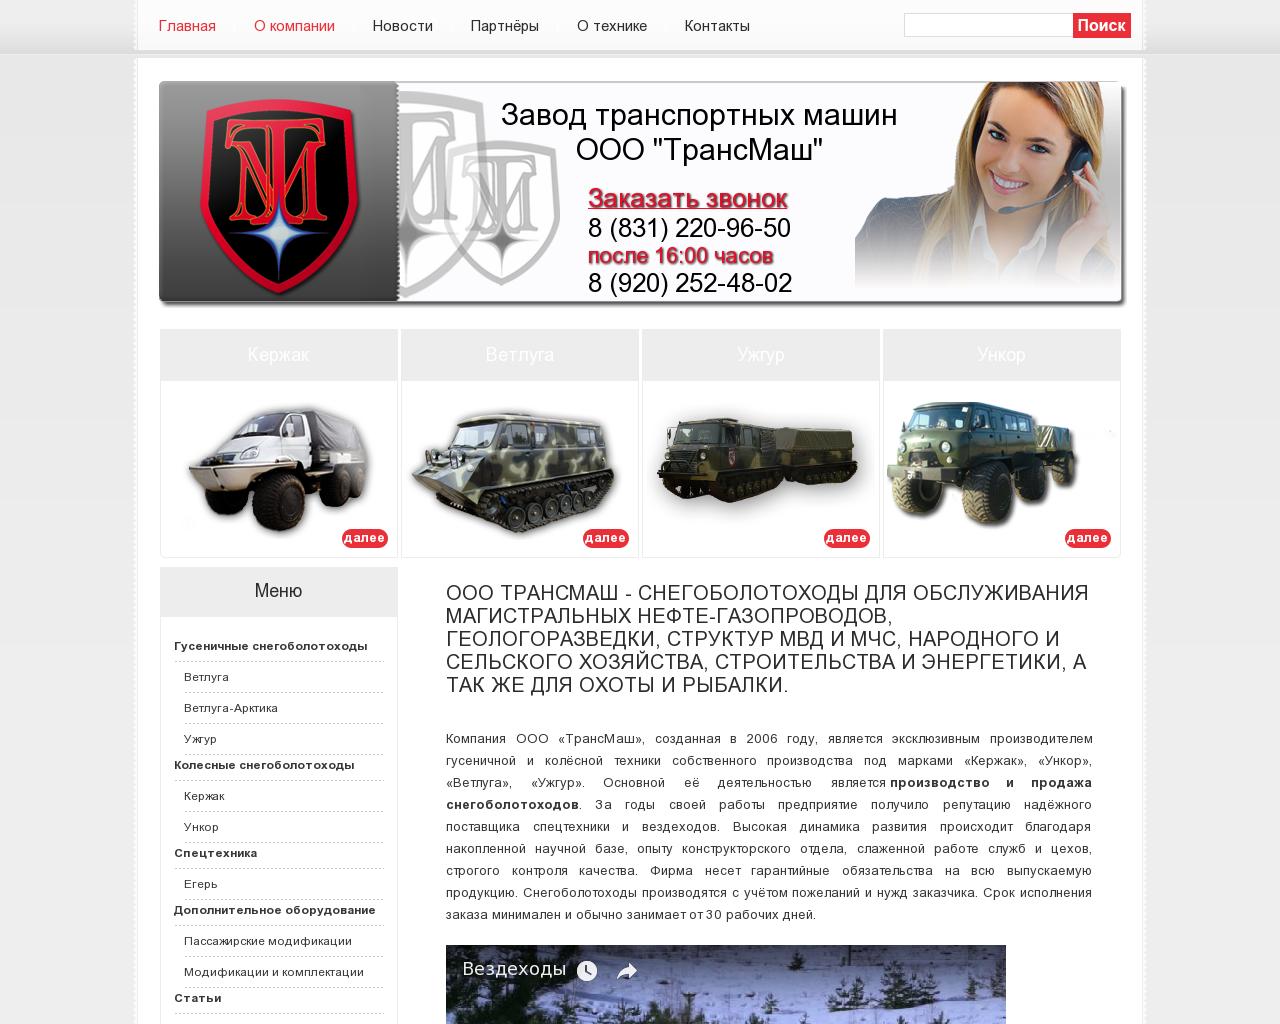 Изображение сайта transmashnn.ru в разрешении 1280x1024